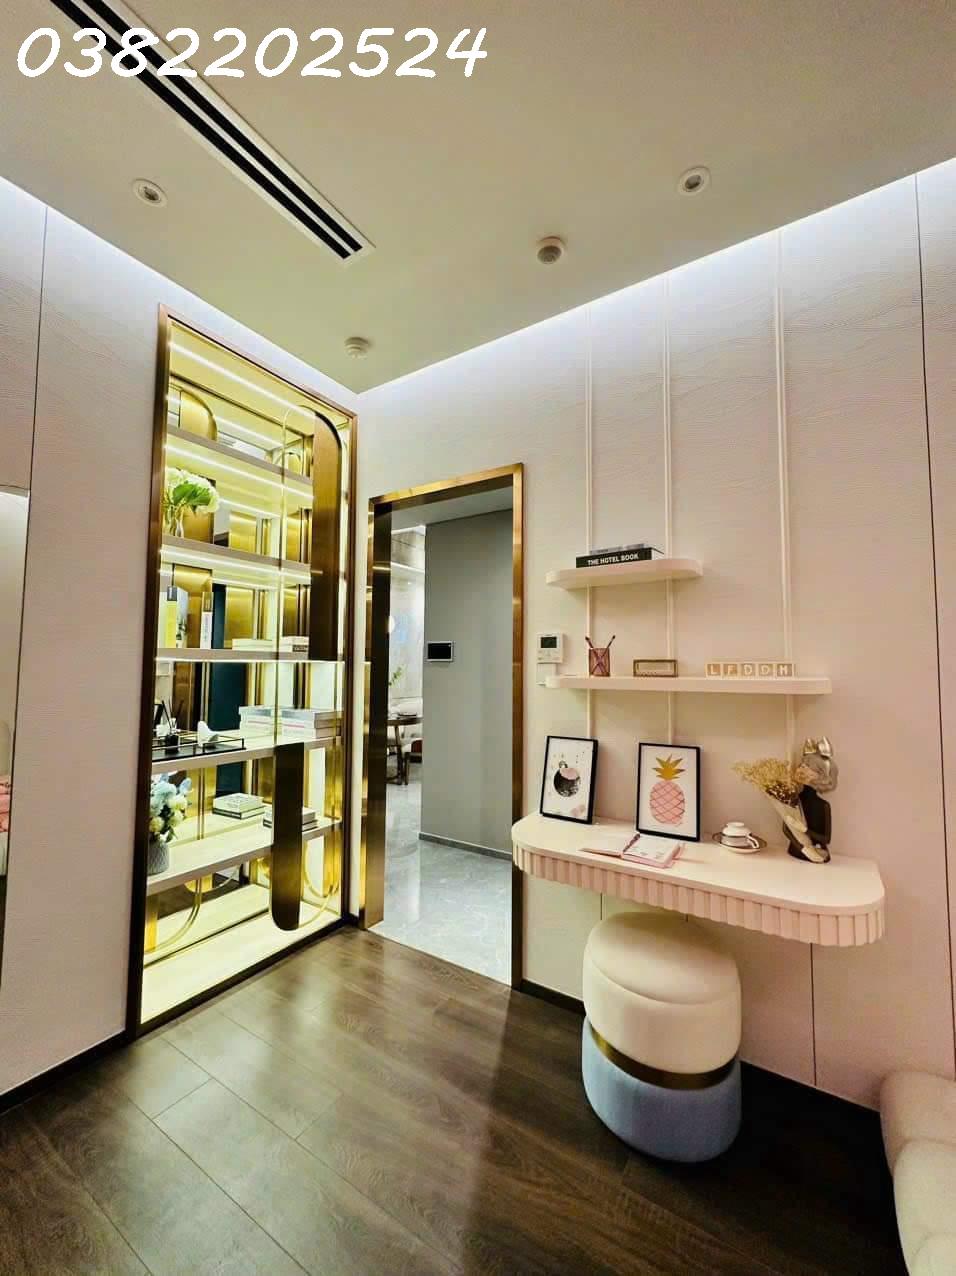 Tặng full nội thất như hình, căn hộ cao cấp mặt tiền Phạm Văn Đồng giá chỉ từ 1,5 tỷ LH 0382202524 4